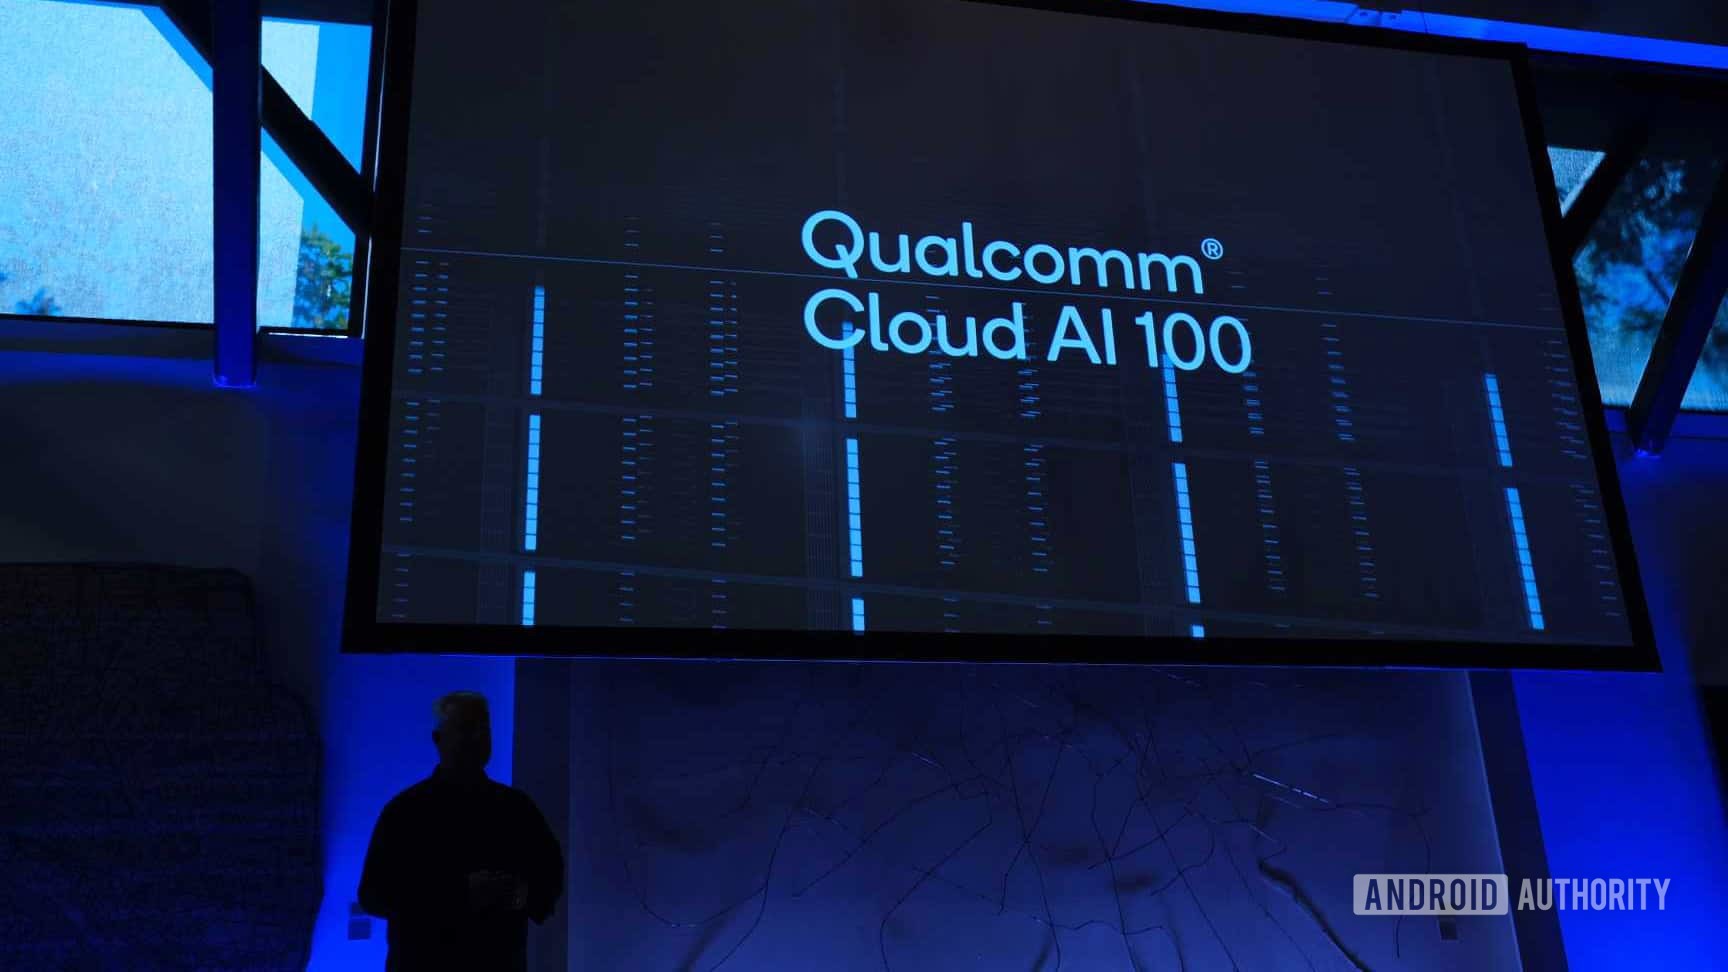 qualcomm announces cloud ai 100 platform